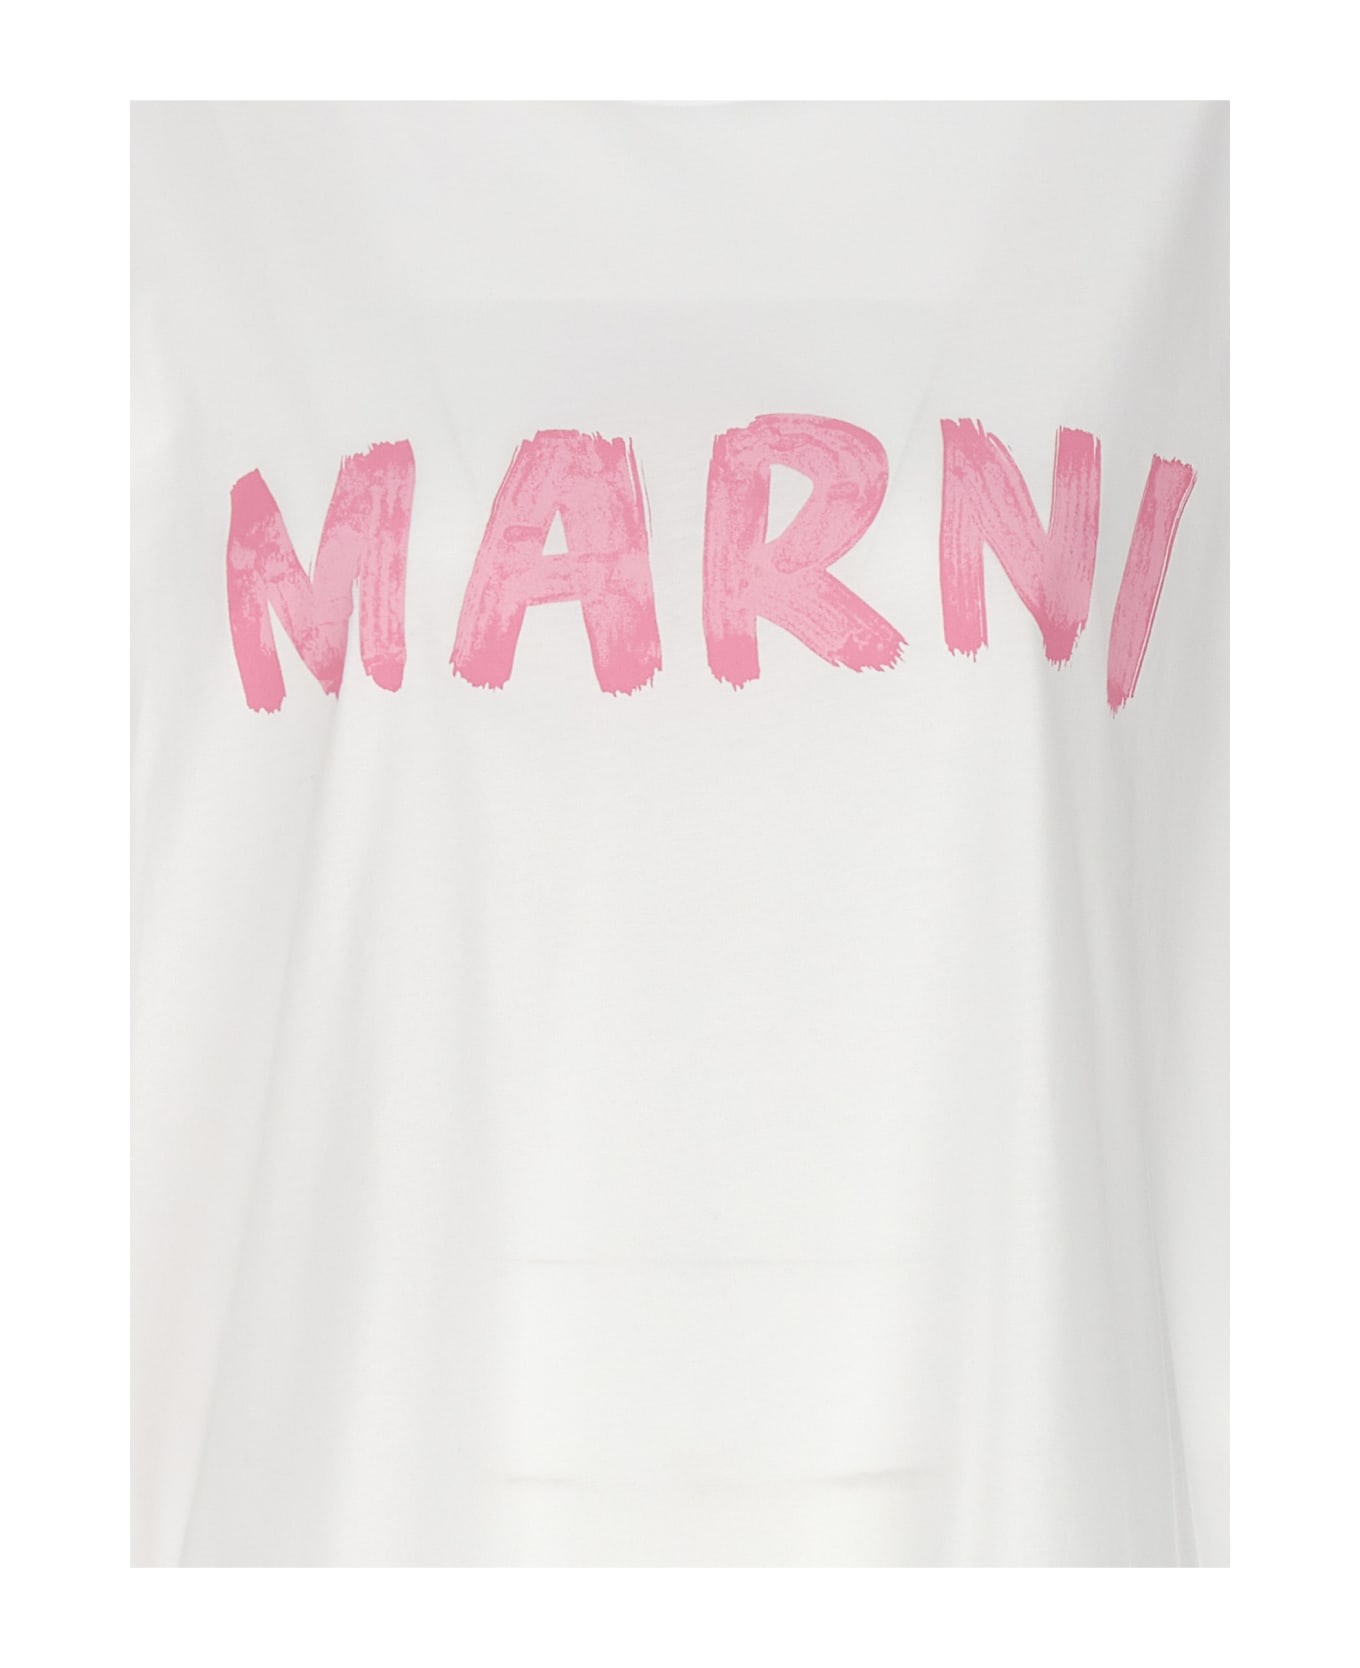 Marni Logo Print T-shirt - White Tシャツ